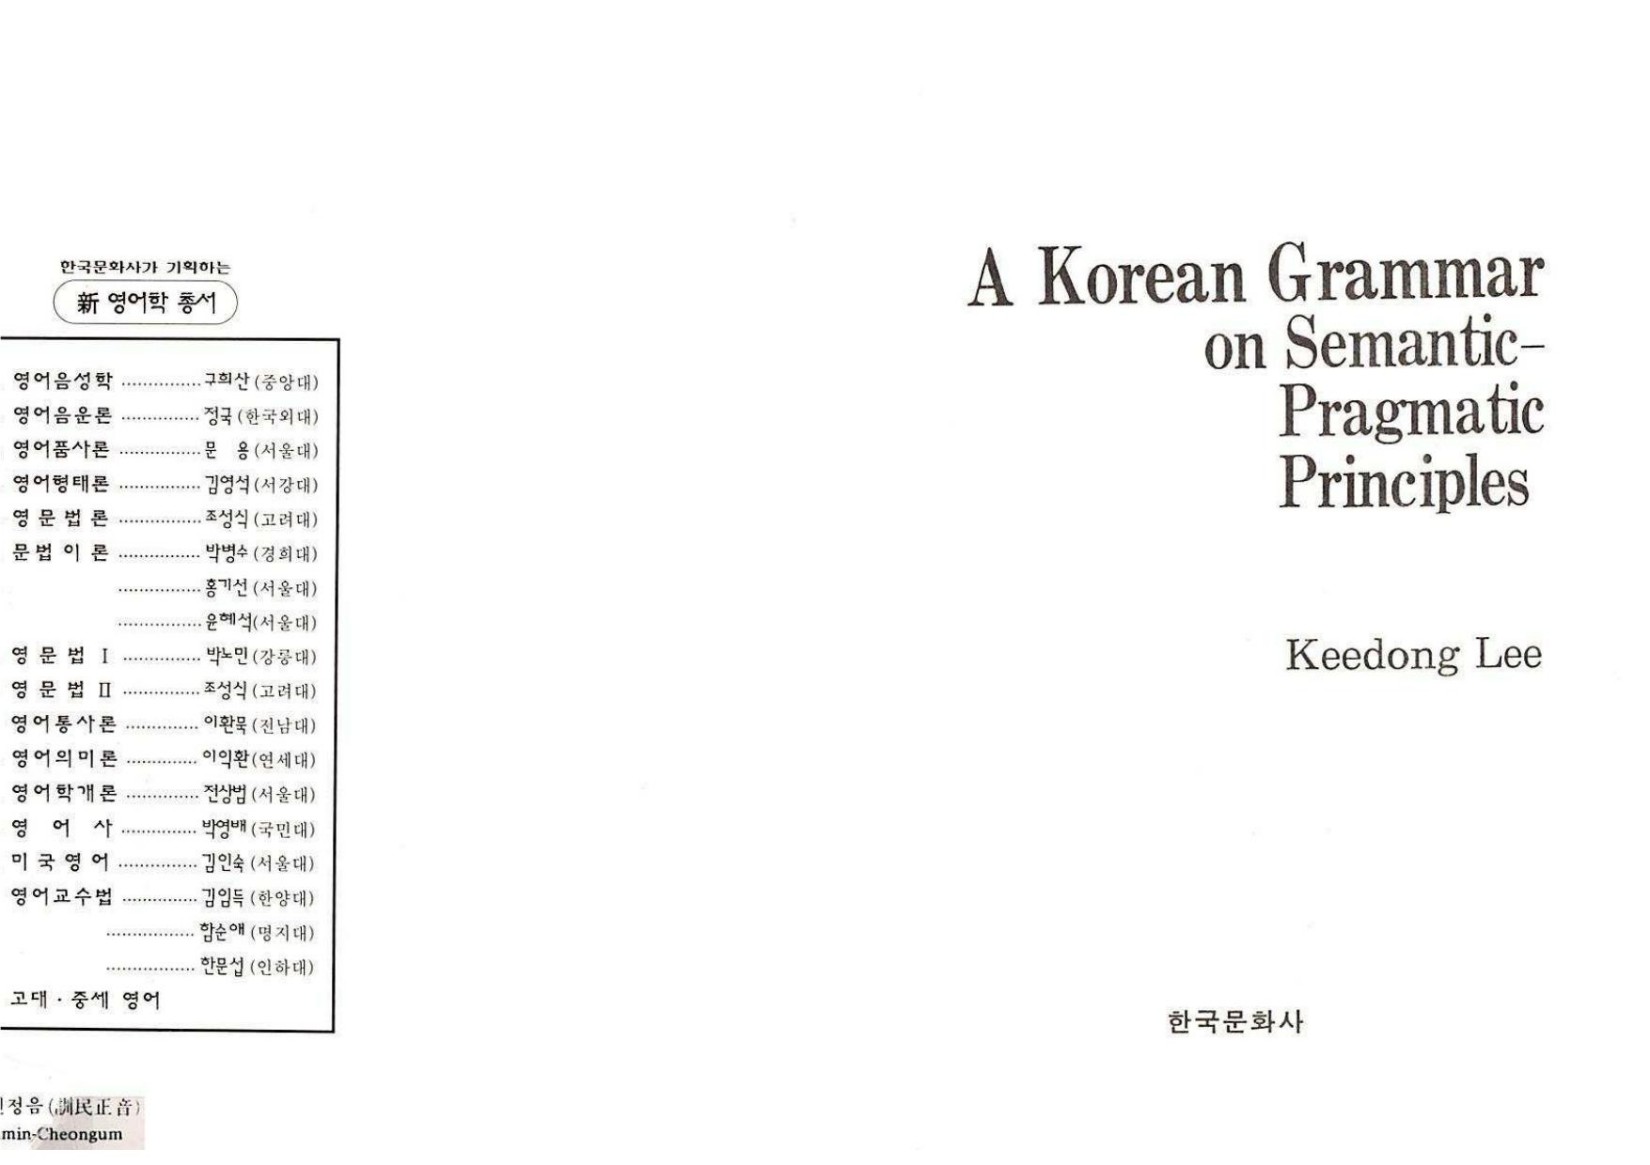 A Korean grammar on semantic-pragmatic principles